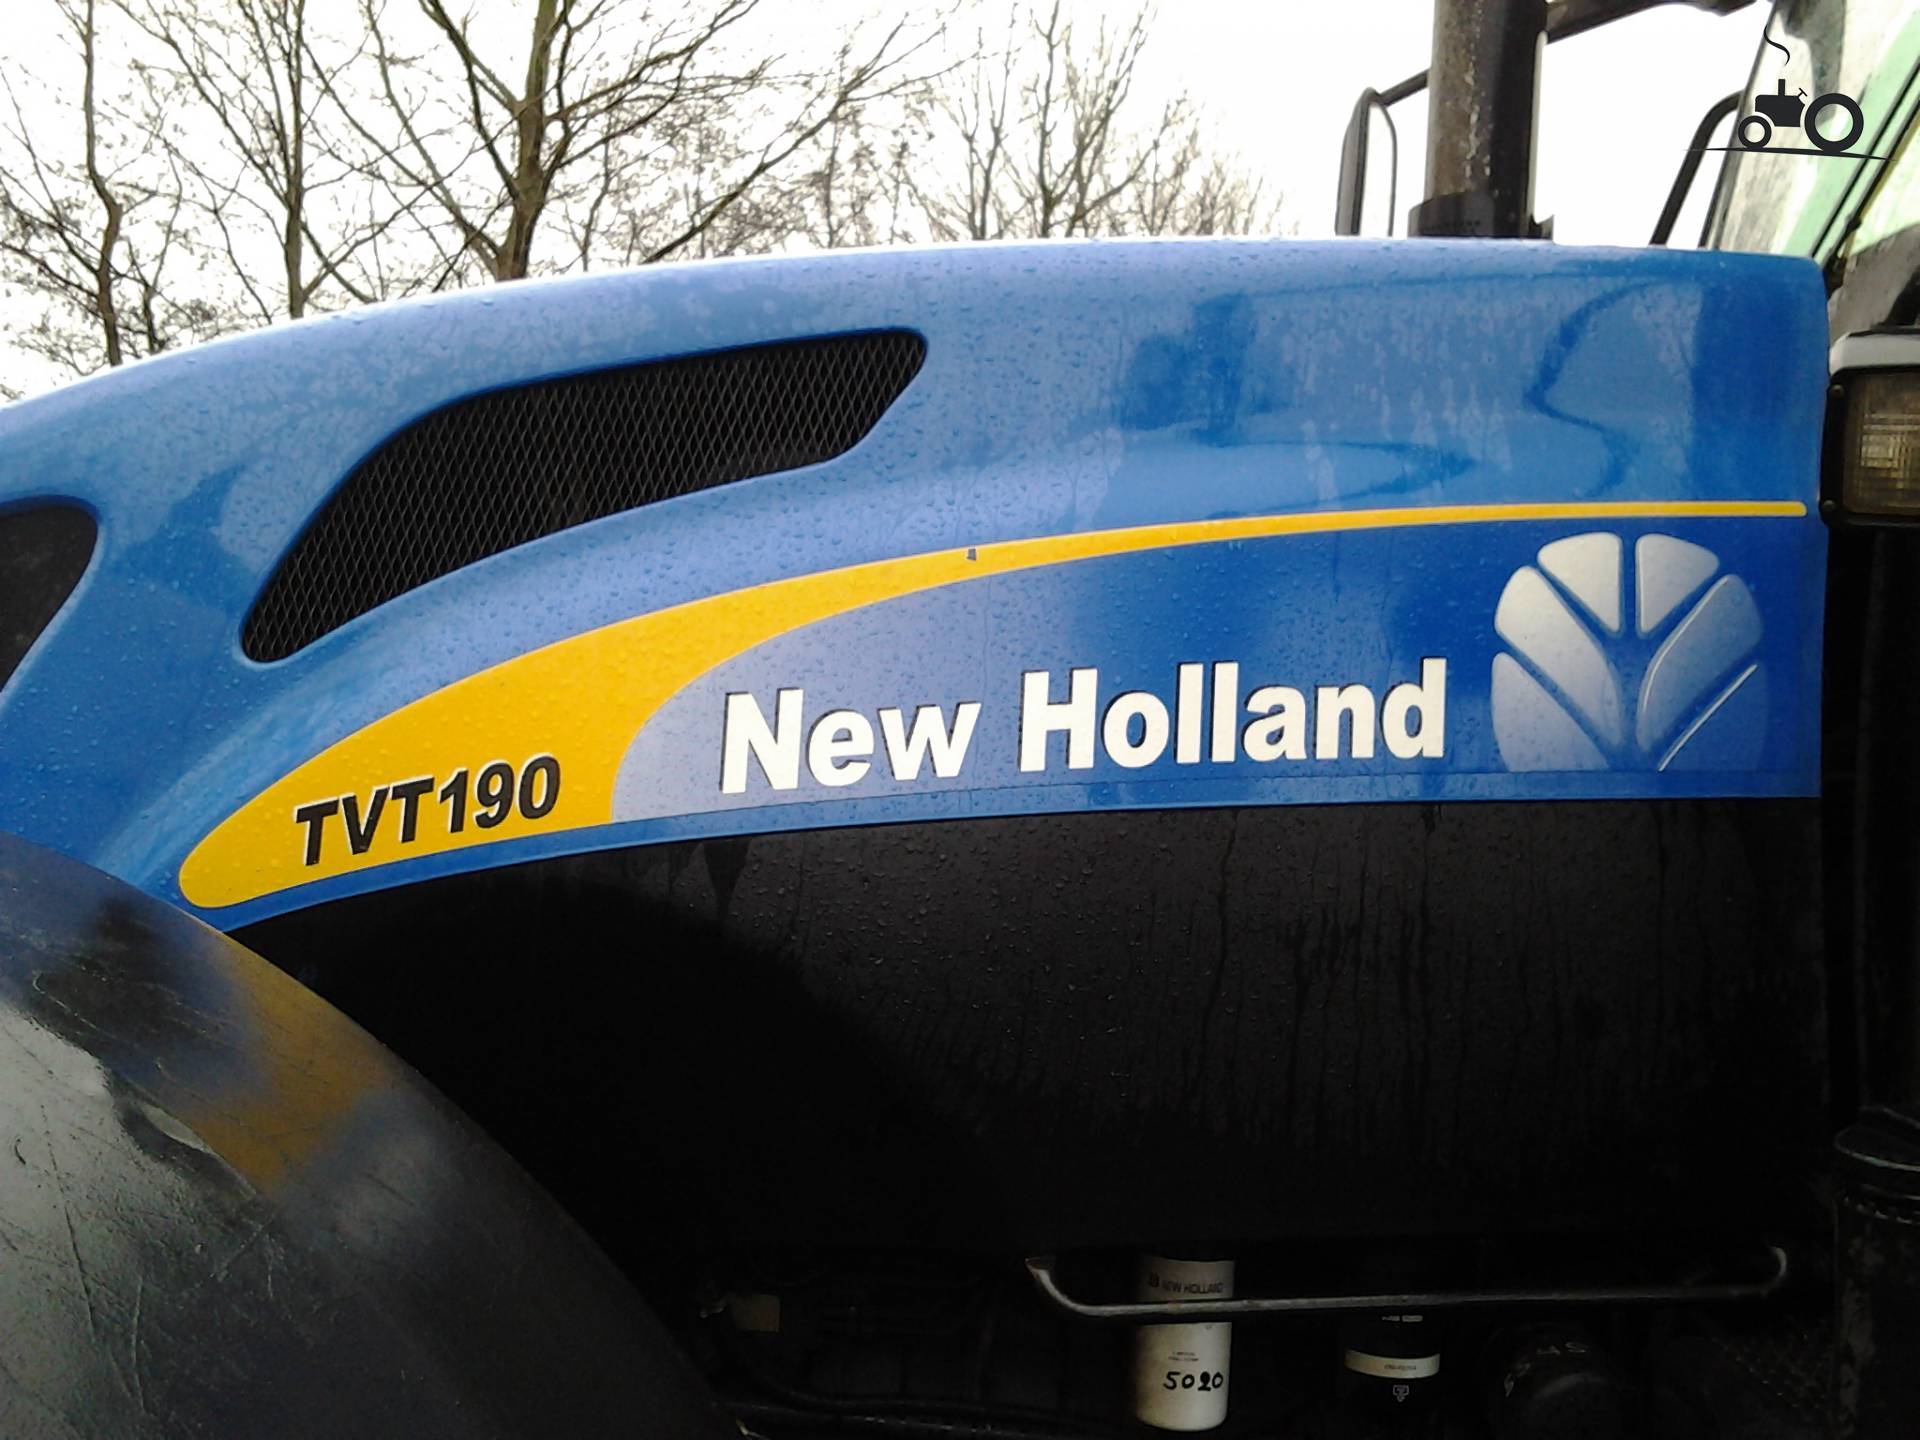 New Holland TVT 190